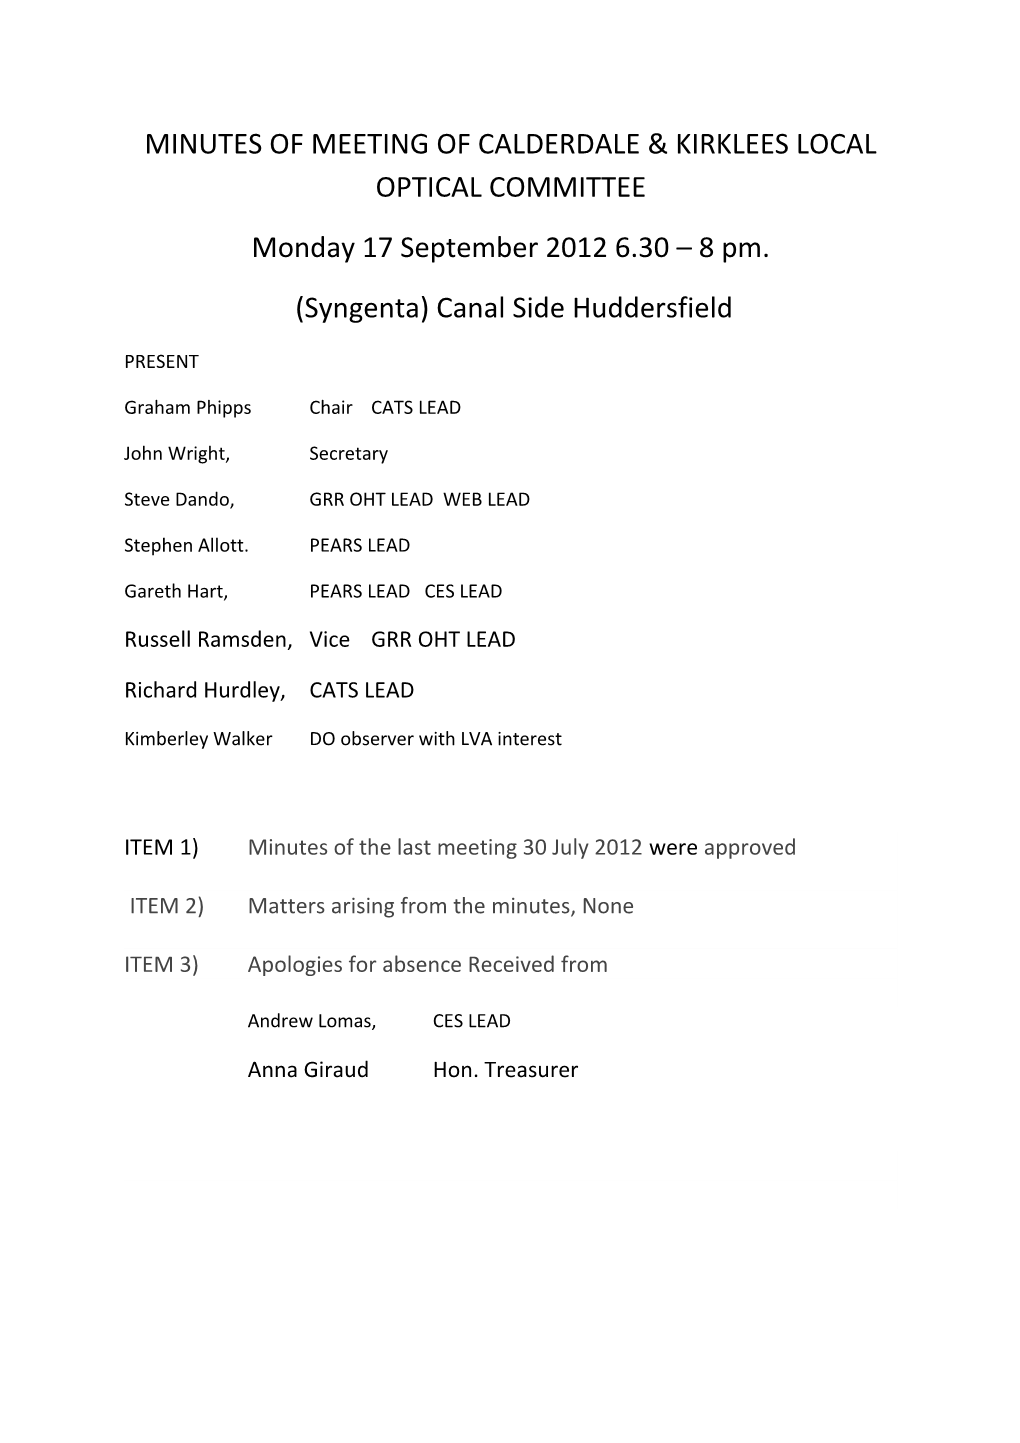 Minutes of Meeting of Calderdale & Kirklees Local Optical Committee